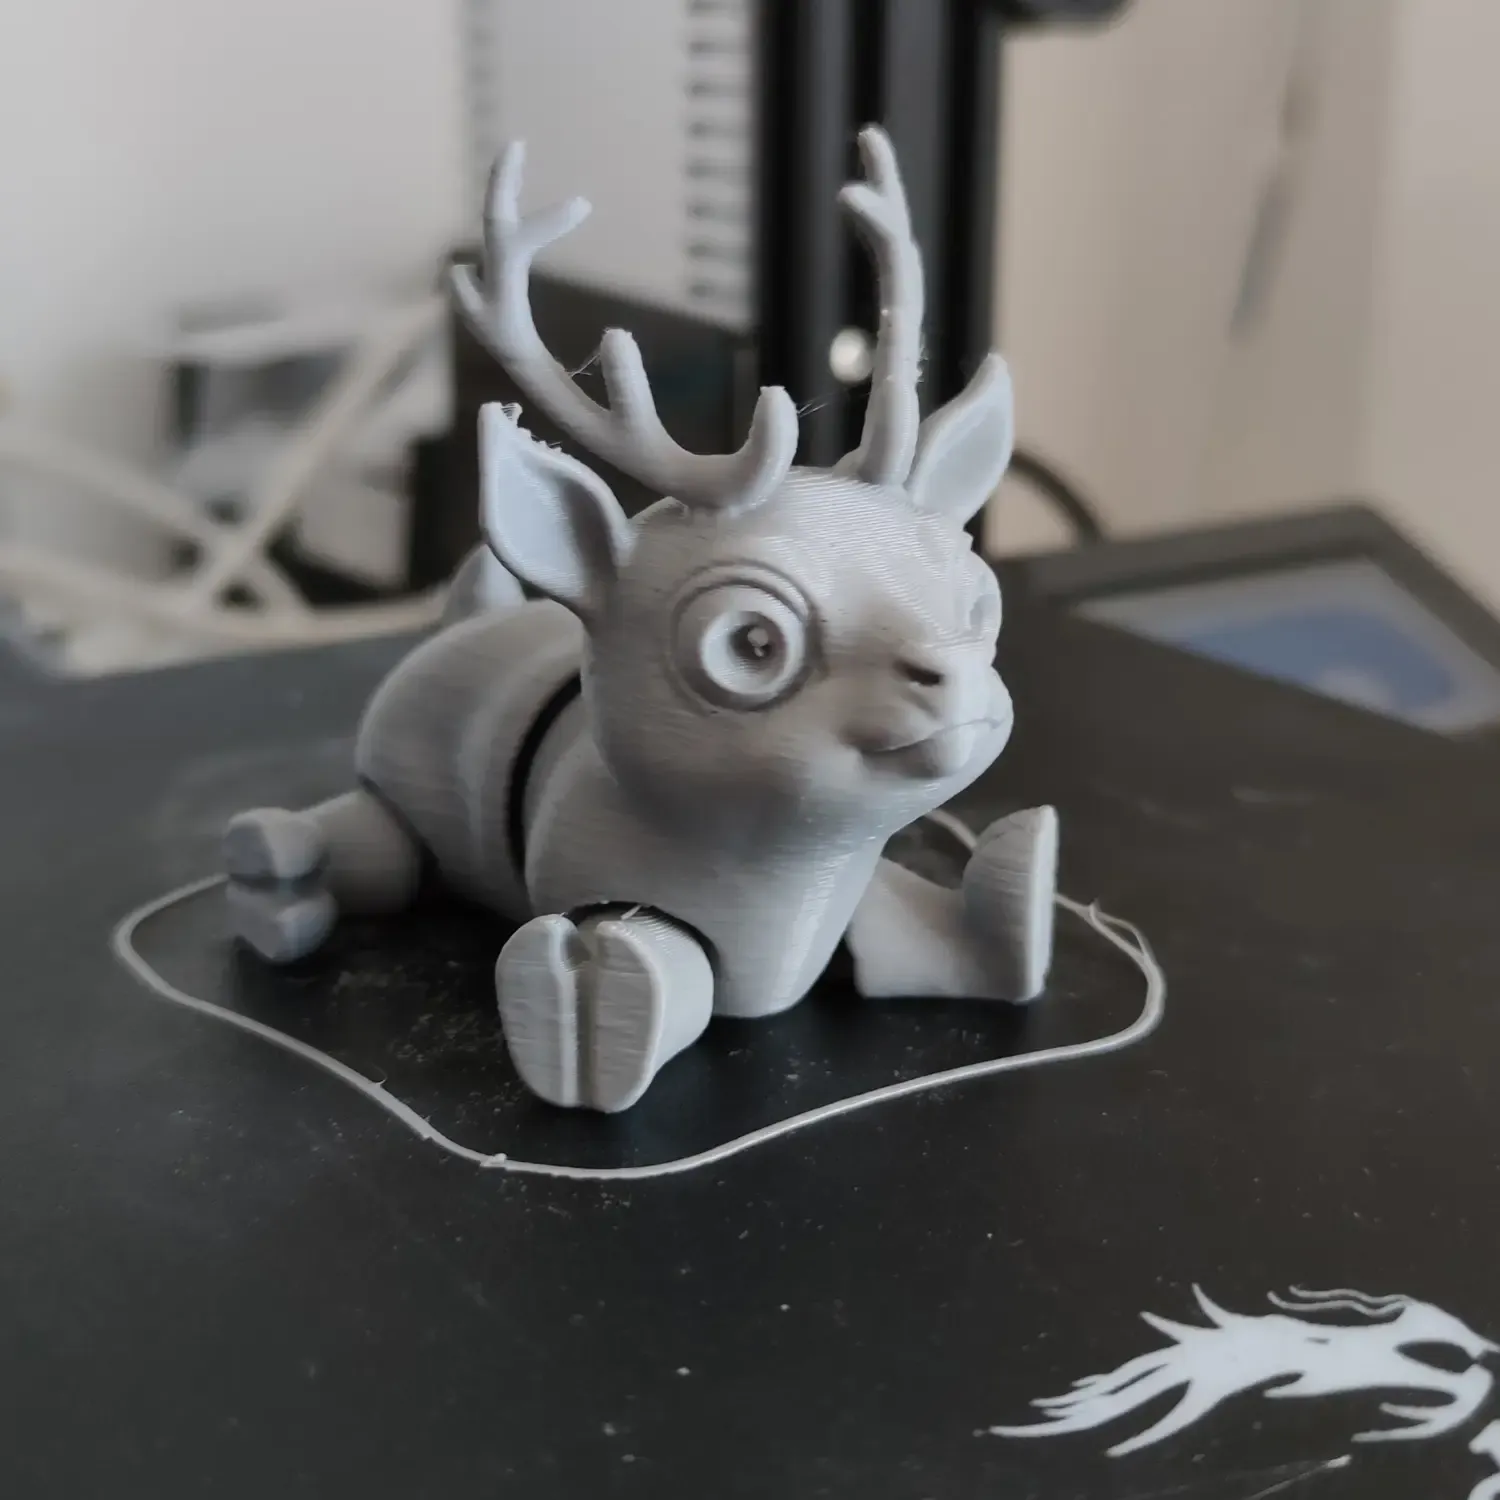 Deer (reindeer) print in place flexi animal toy